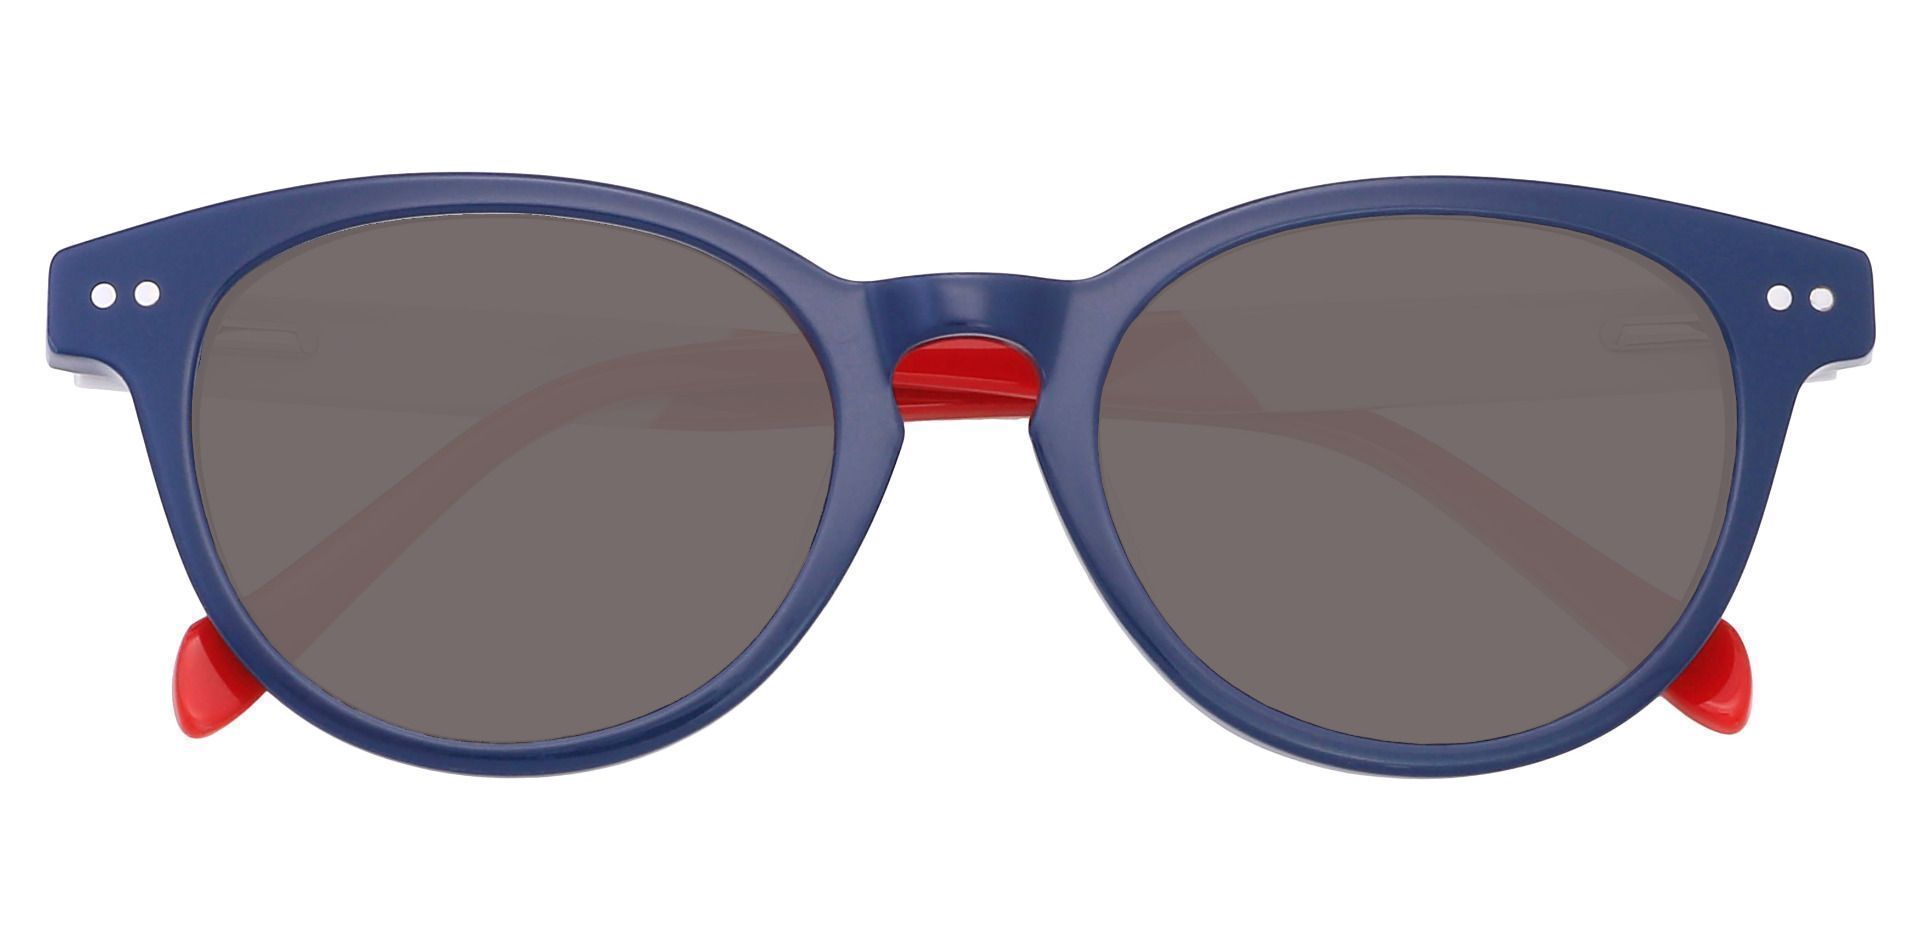 Revere Oval Prescription Sunglasses - Blue Frame With Gray Lenses